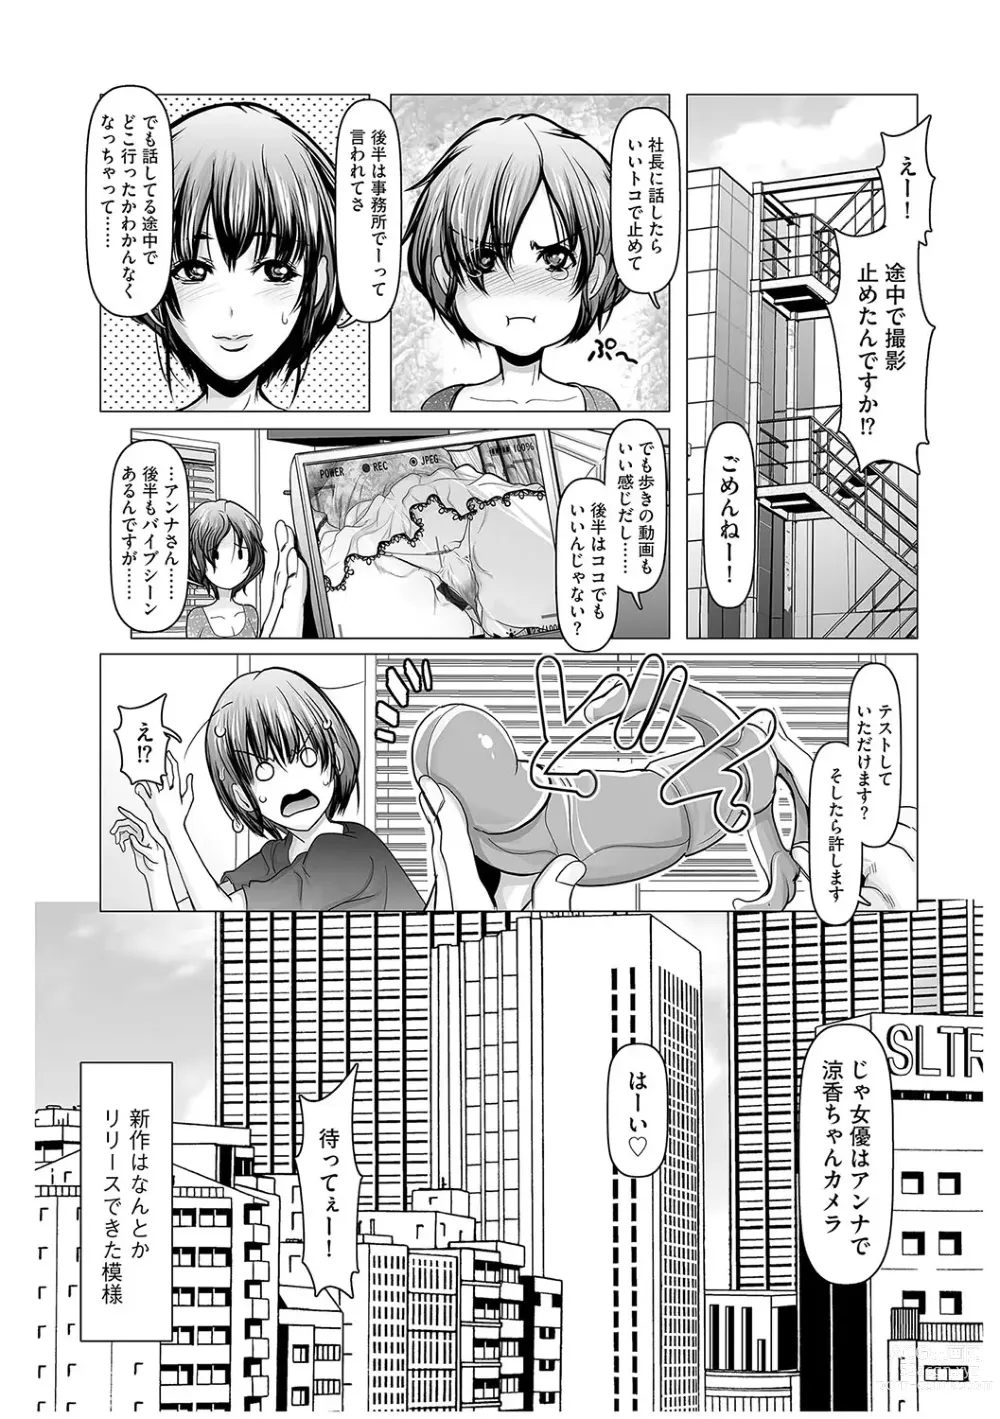 Page 189 of manga G-Edge Vol.045